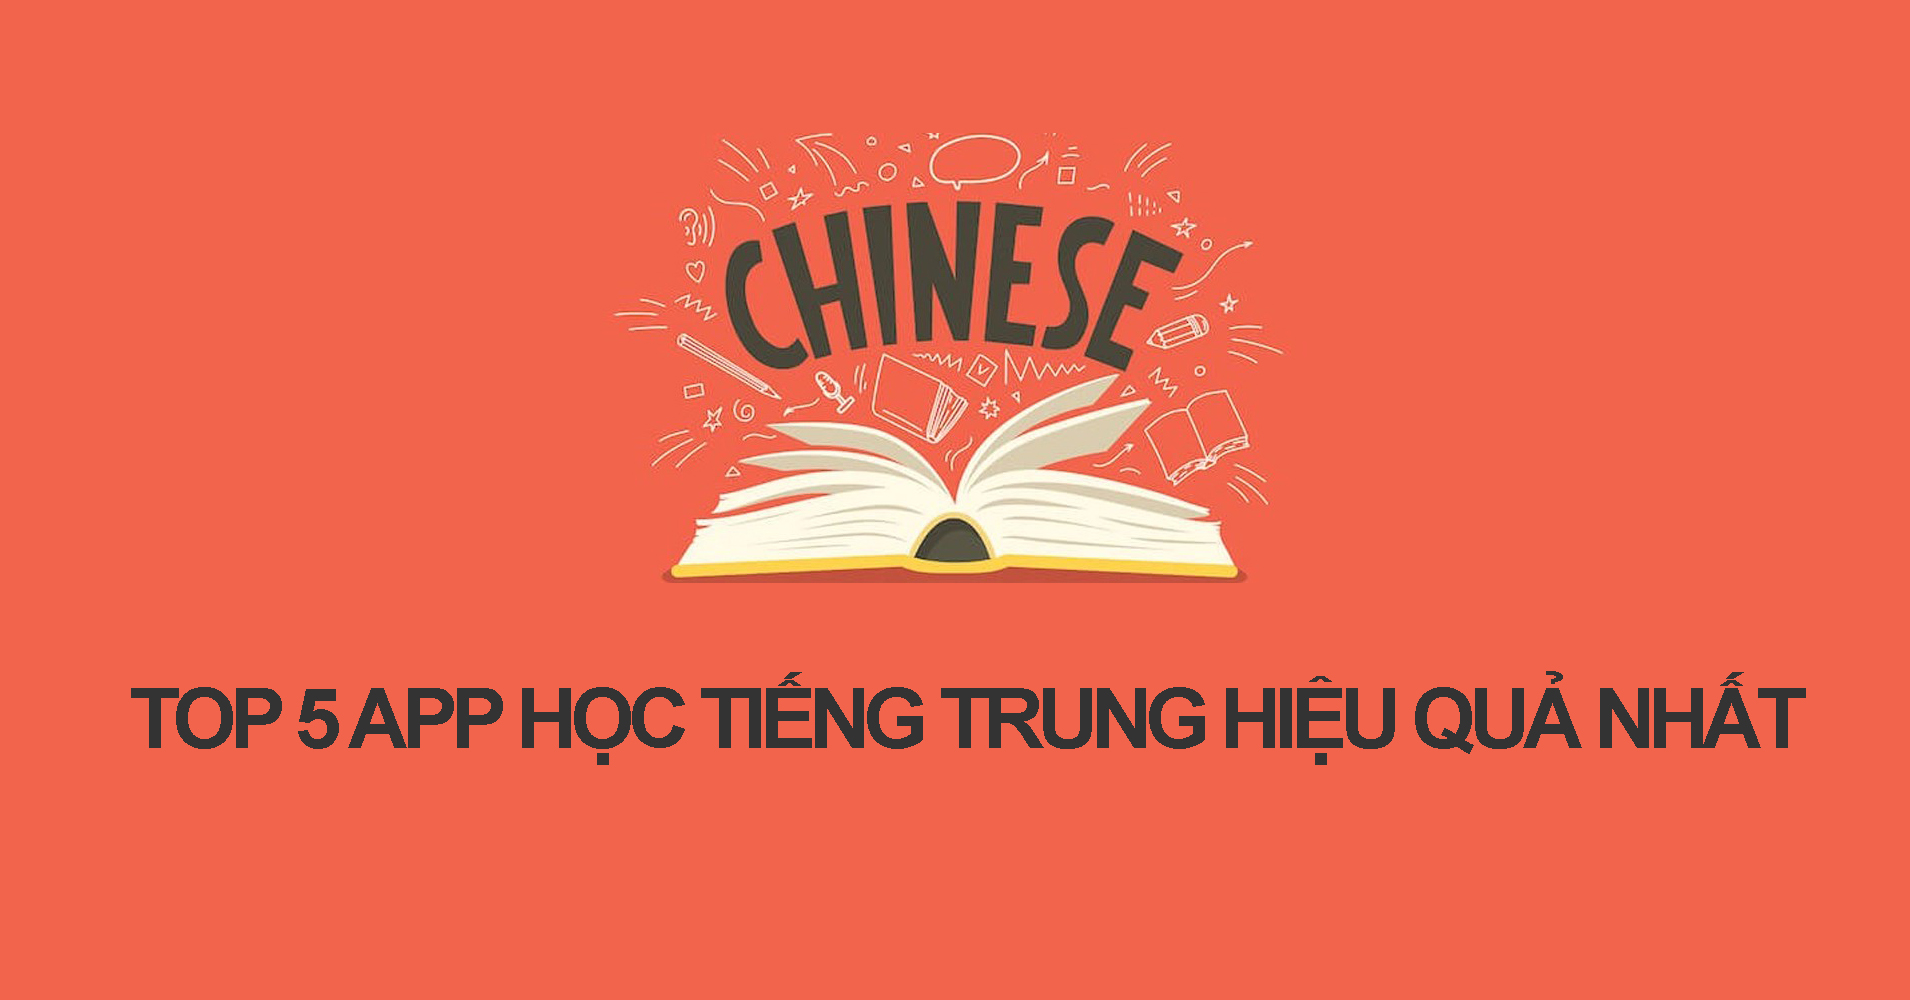 Top 5 app học tiếng Trung hiệu quả nhất dành riêng cho bạn